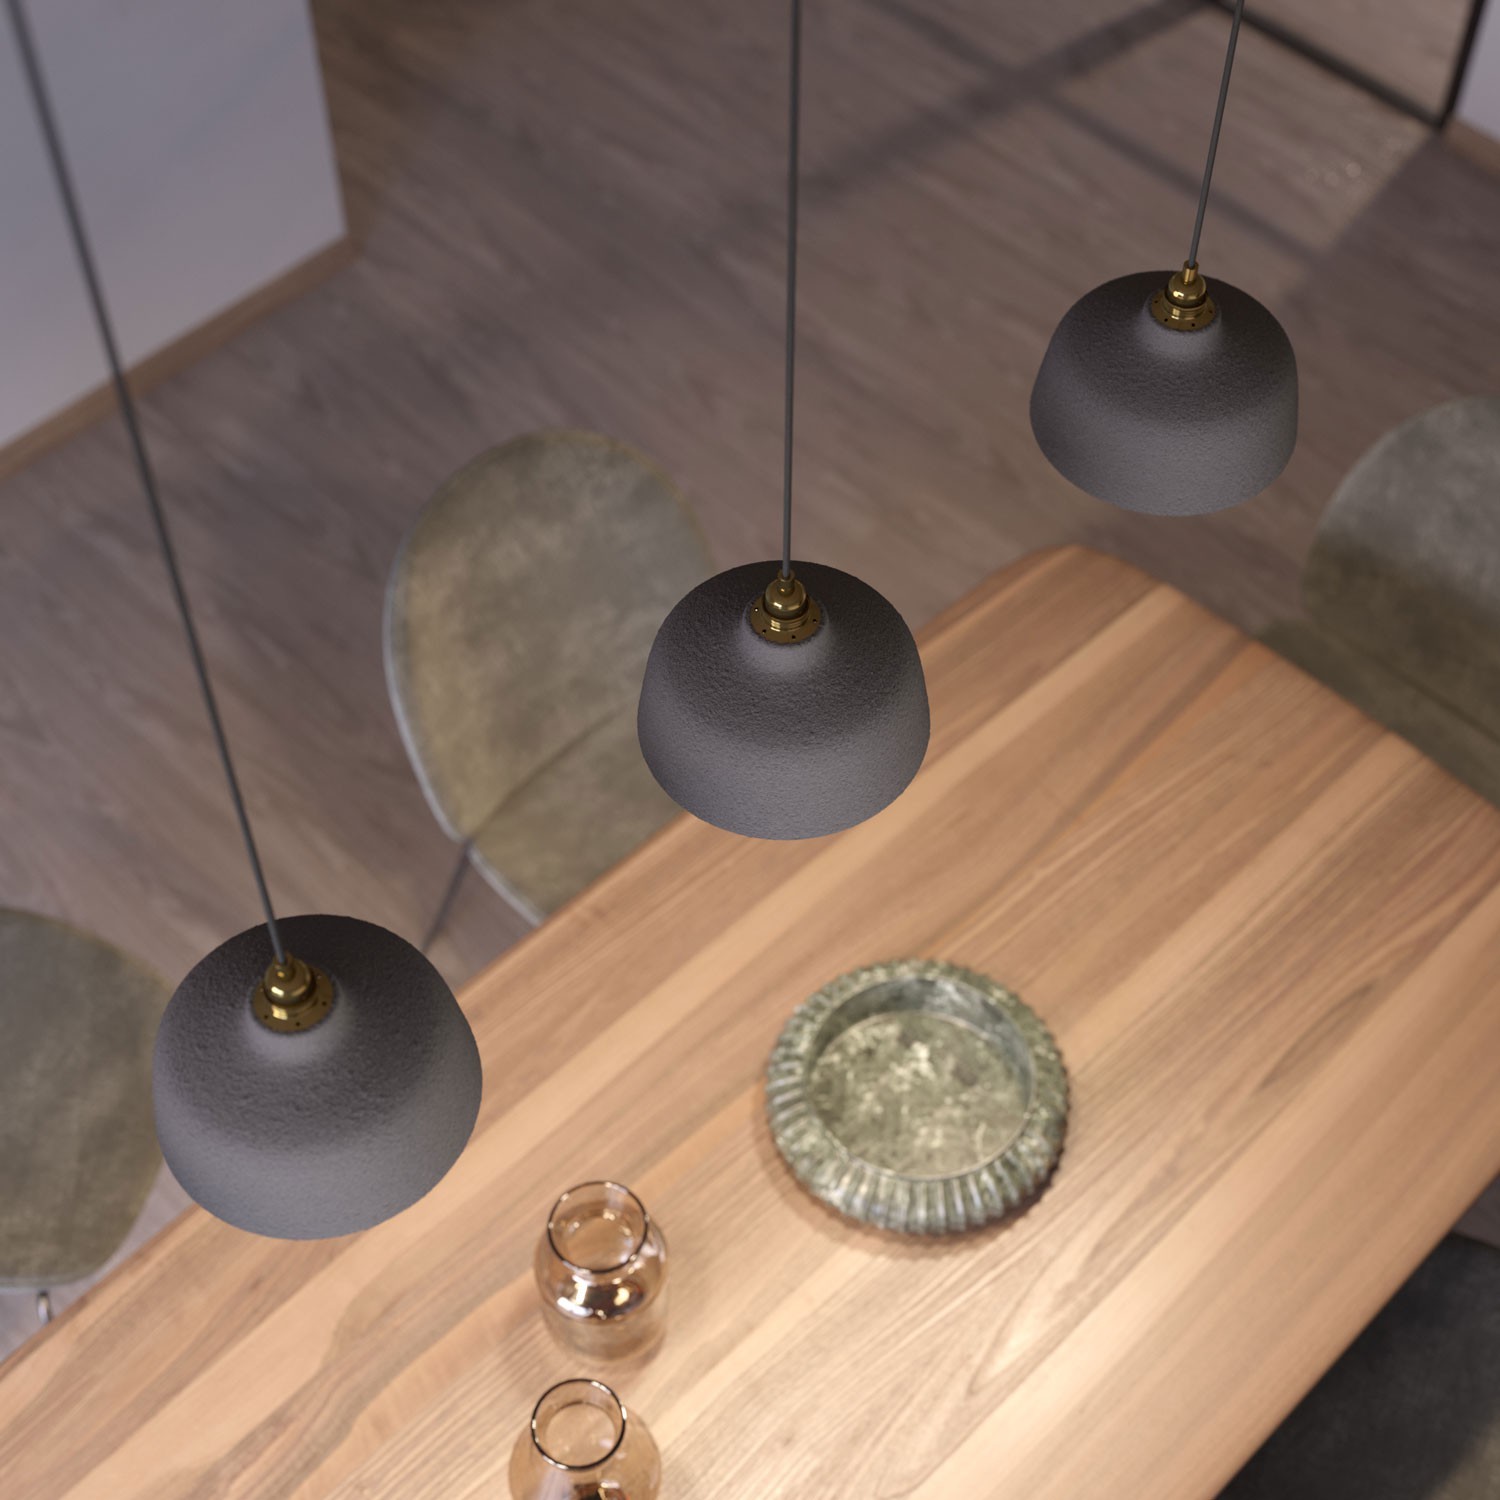 Pendellampa komplett med textilkabel, Coppa lampskärm i keramik och detaljer i metall - Tillverkad i Italien